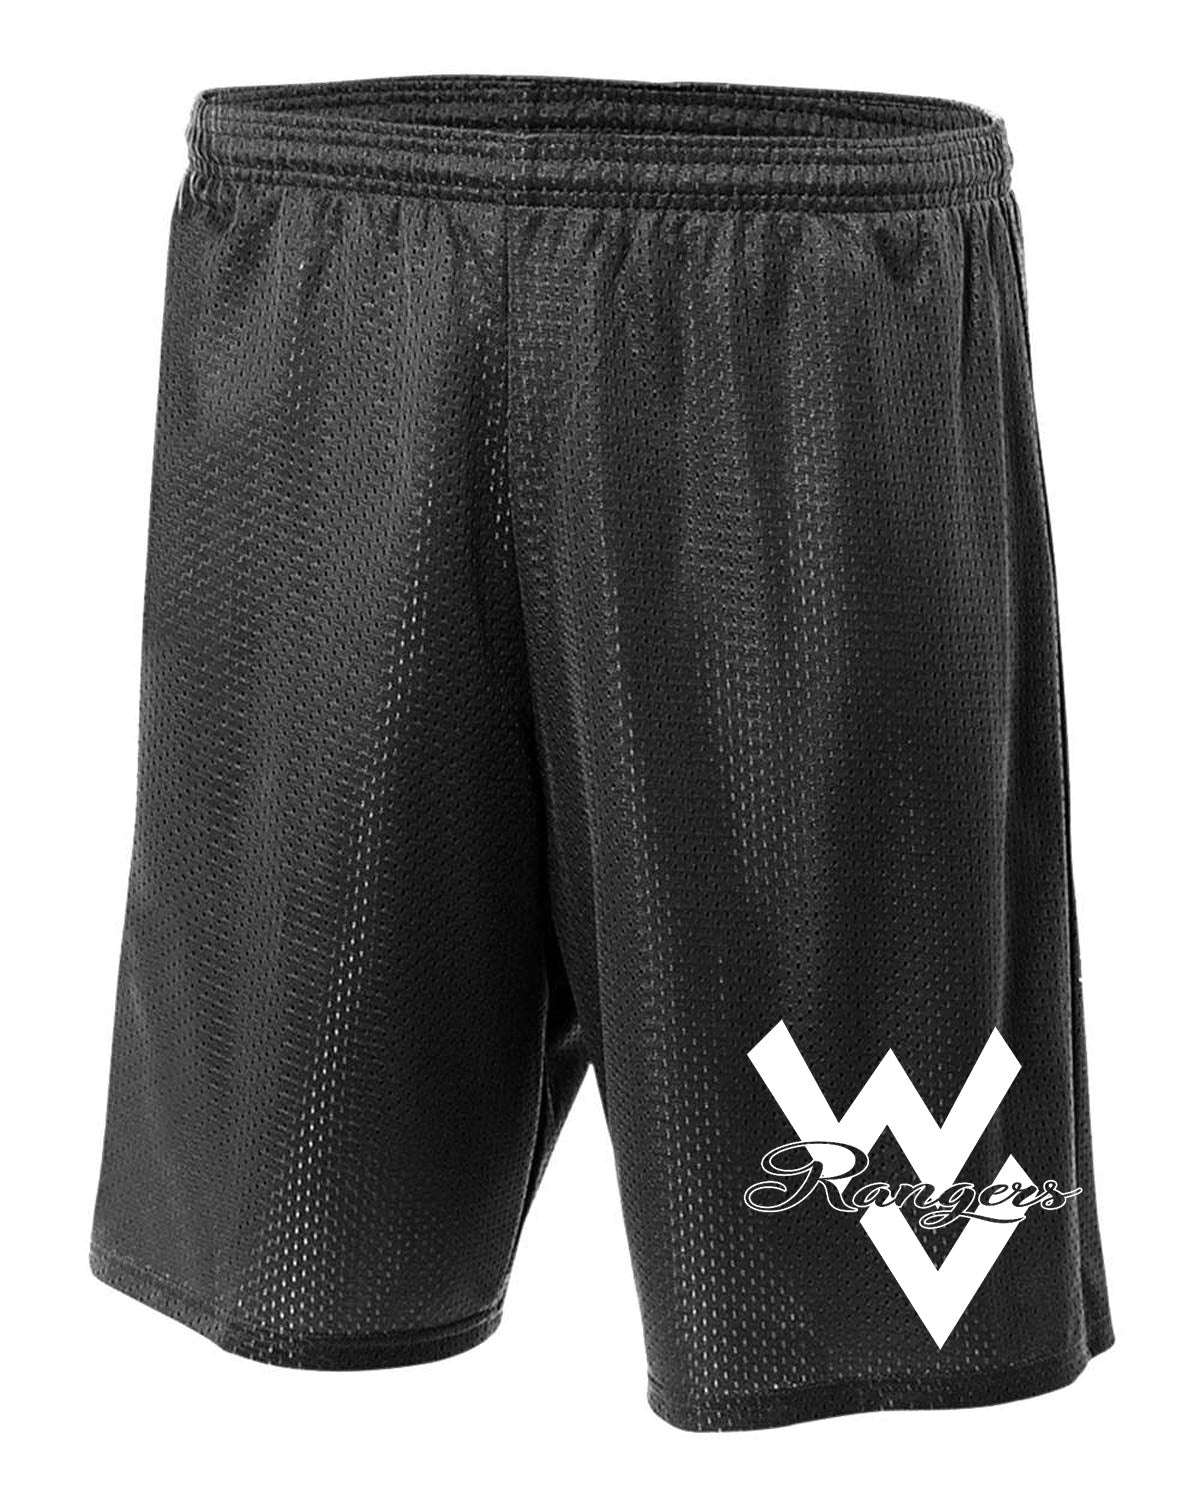 Wallkill Cheer Design 1 Mesh Shorts